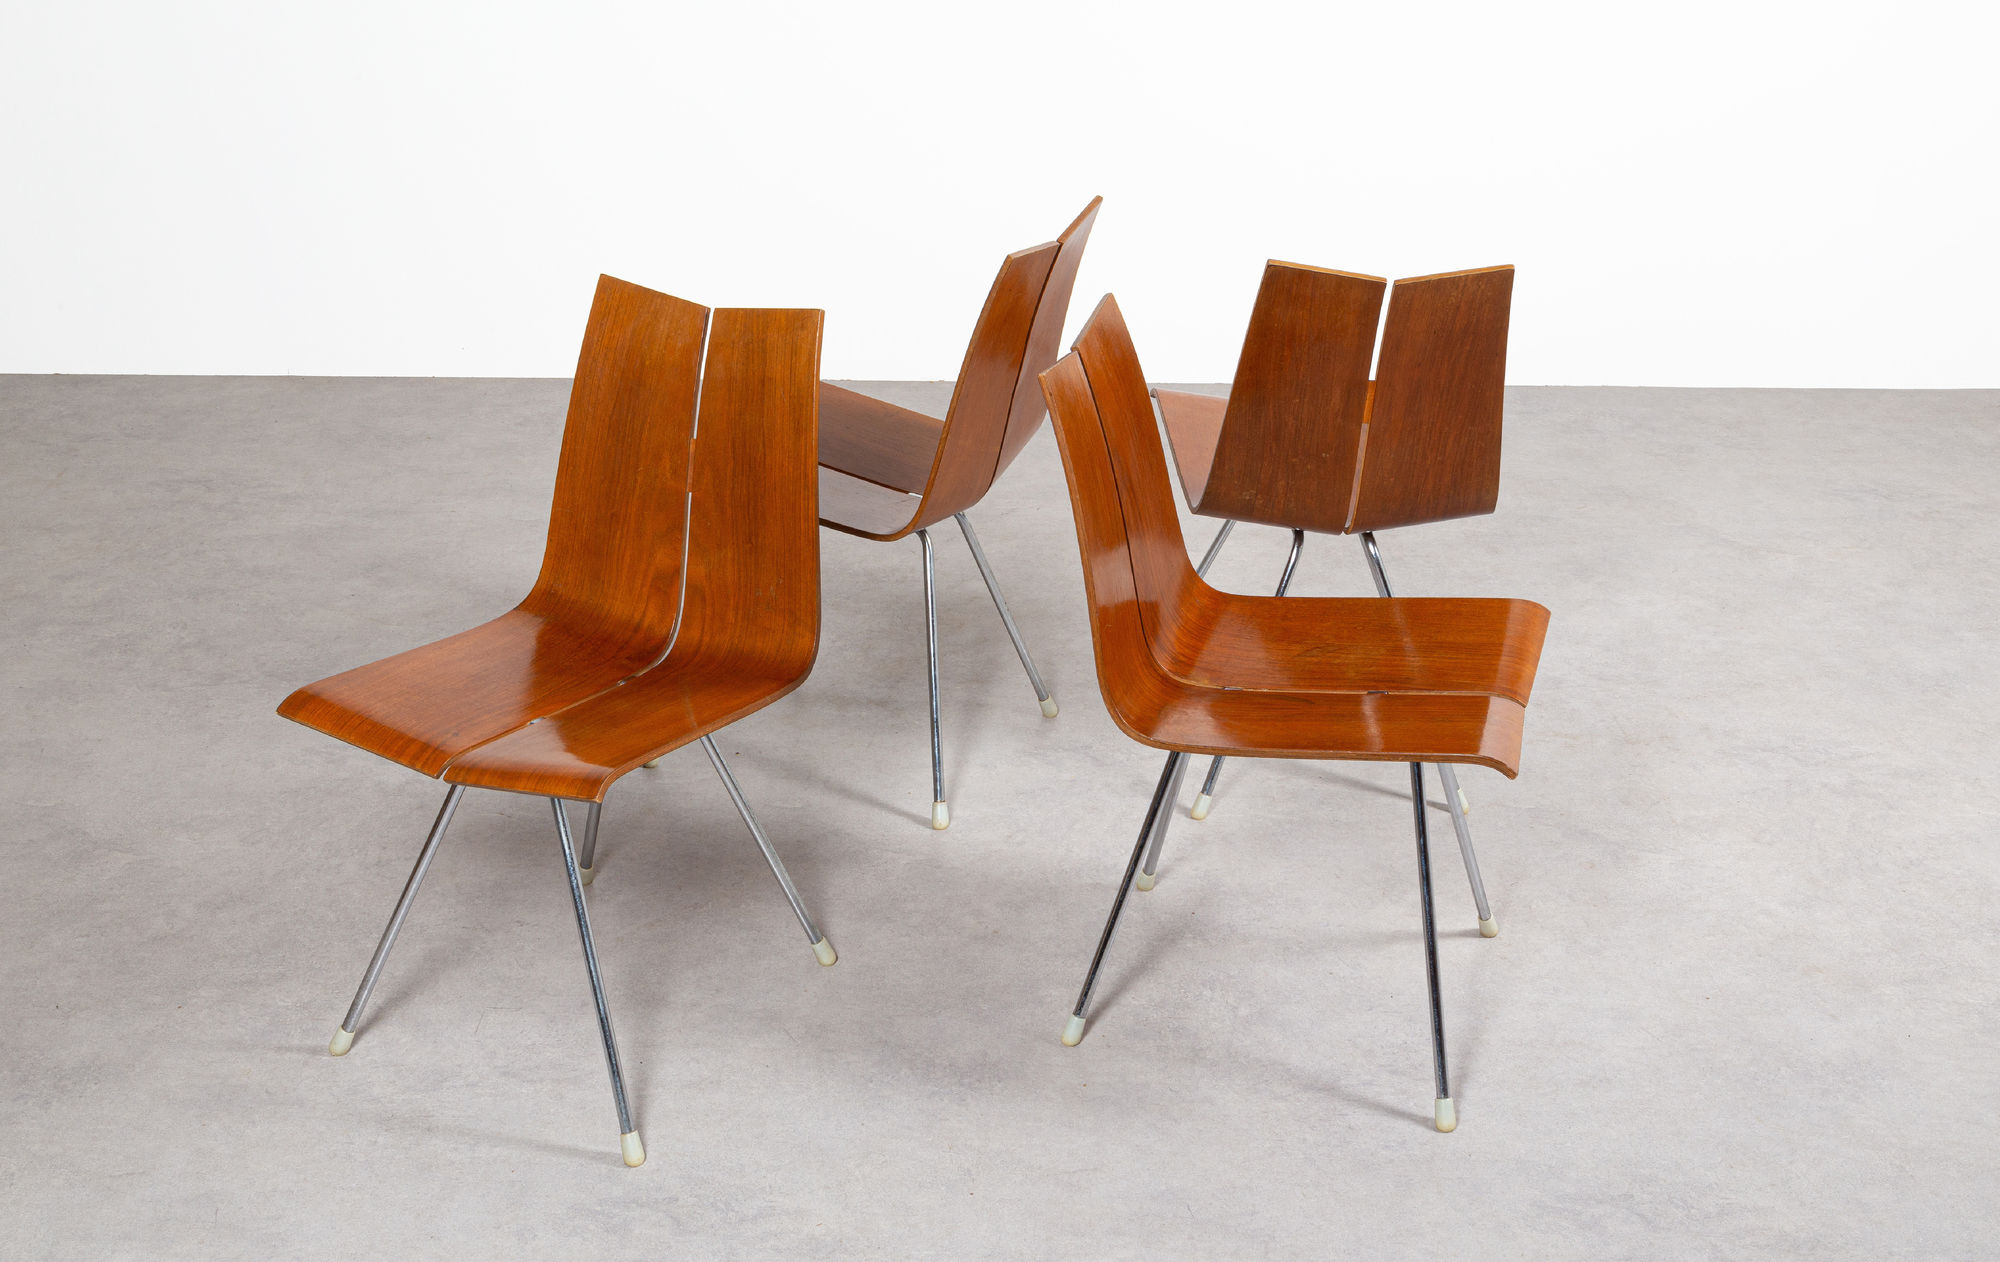 Hans Bellmann GA chairs